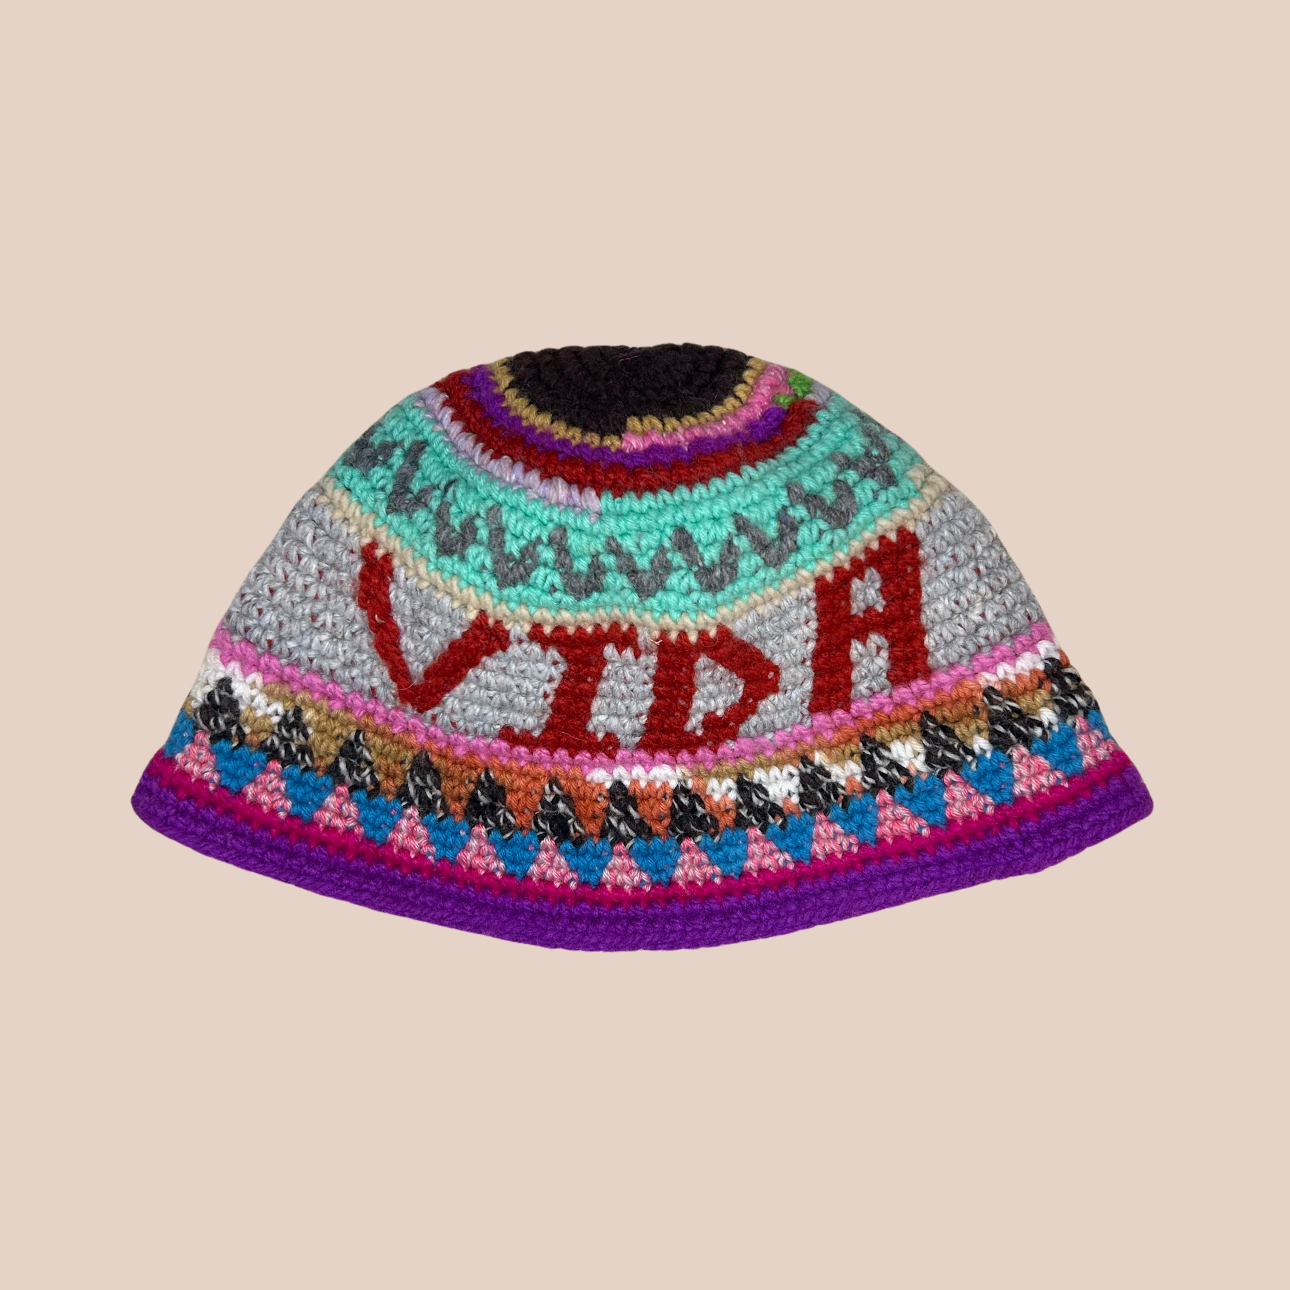 Image d'un bucket hat crocheté en laine et acrylique avec texte "vida" de Maison Badigo, arborant des couleurs vives et audacieuses